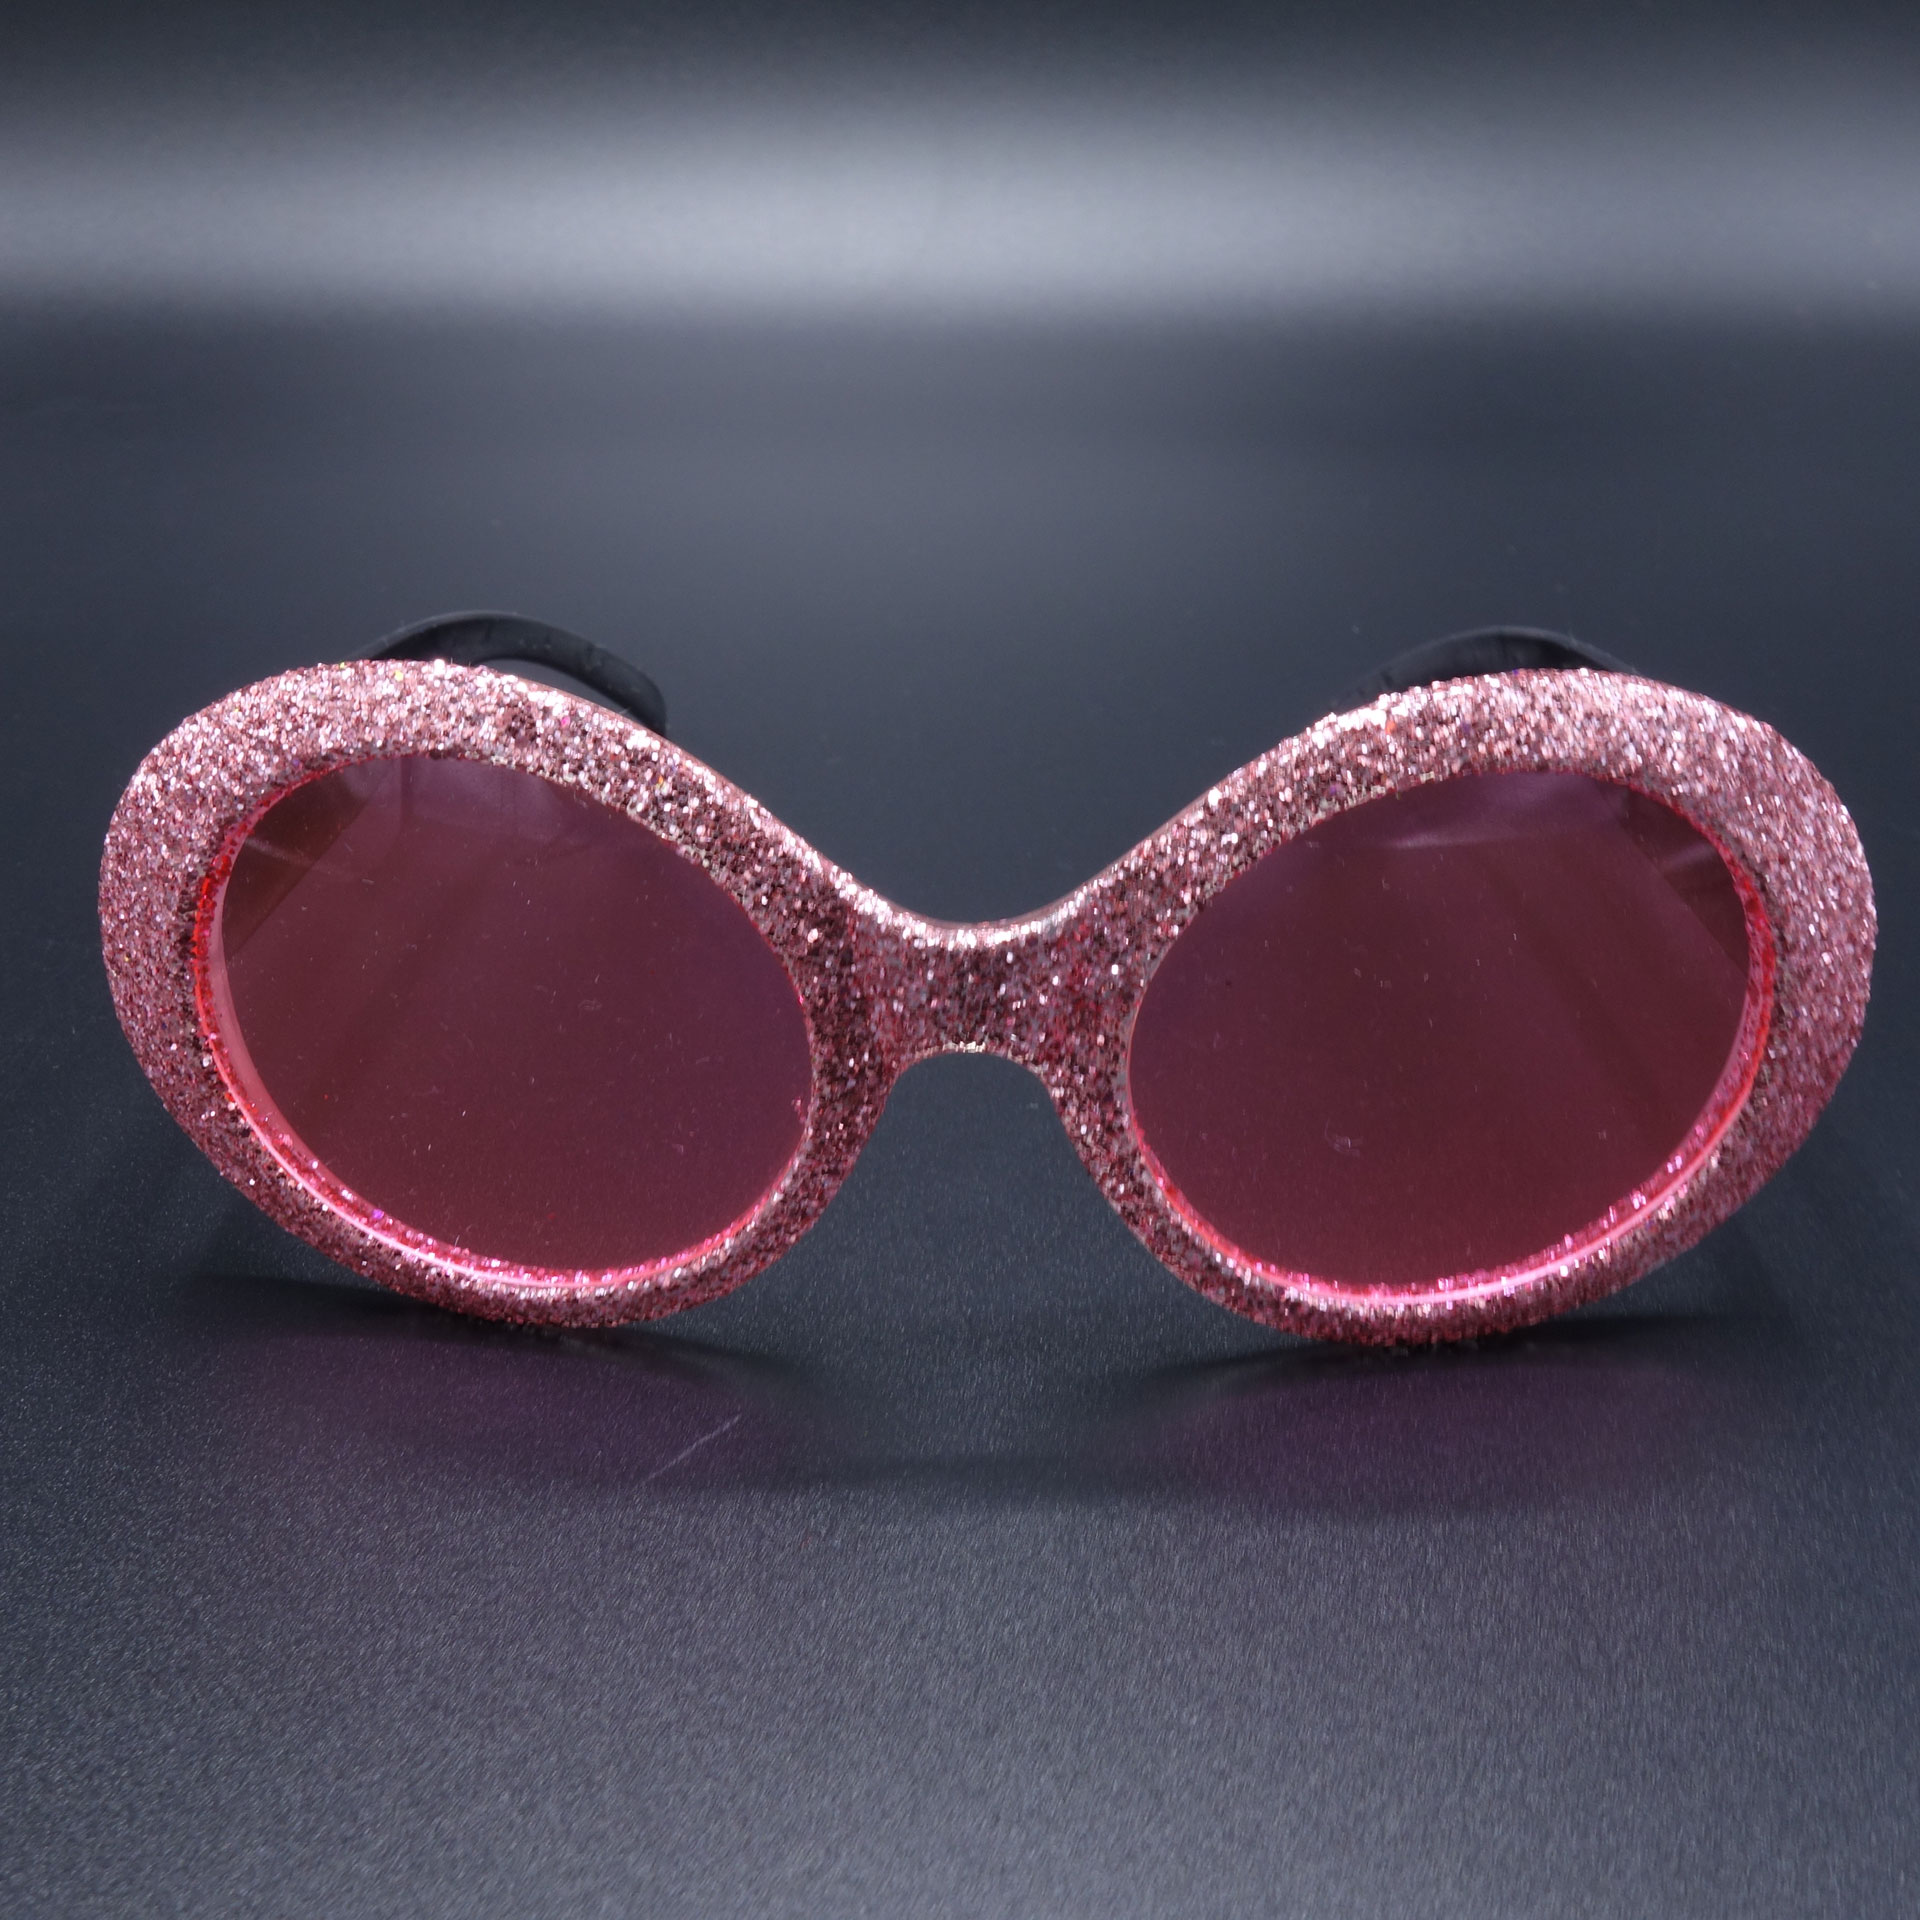 Partybrille Spassbrille Scherzartikel Pink Glitzer